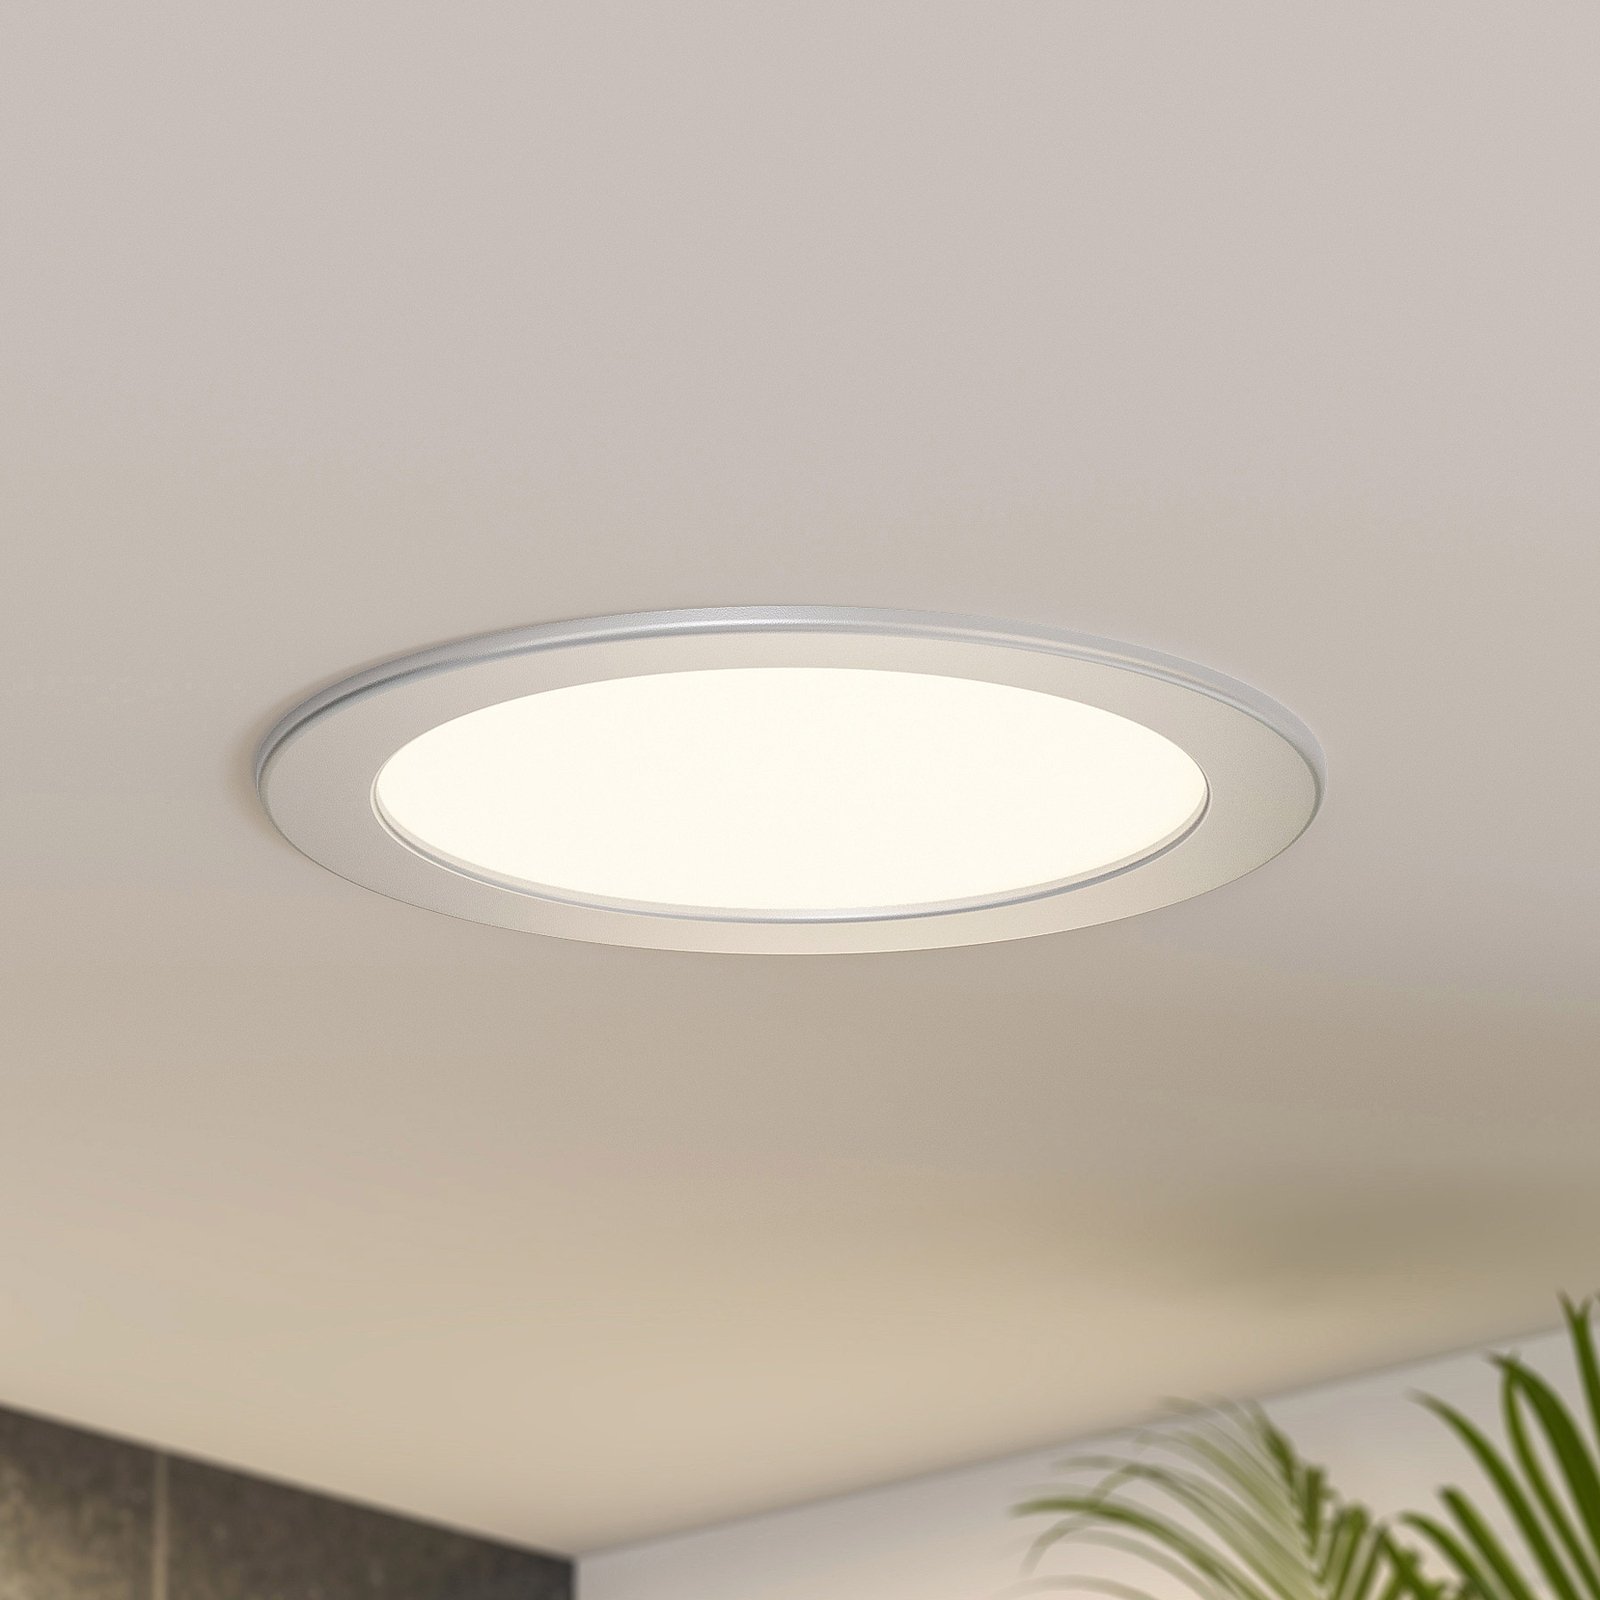 Prios Cadance LED-inbyggnadslampa, silver, 22 cm